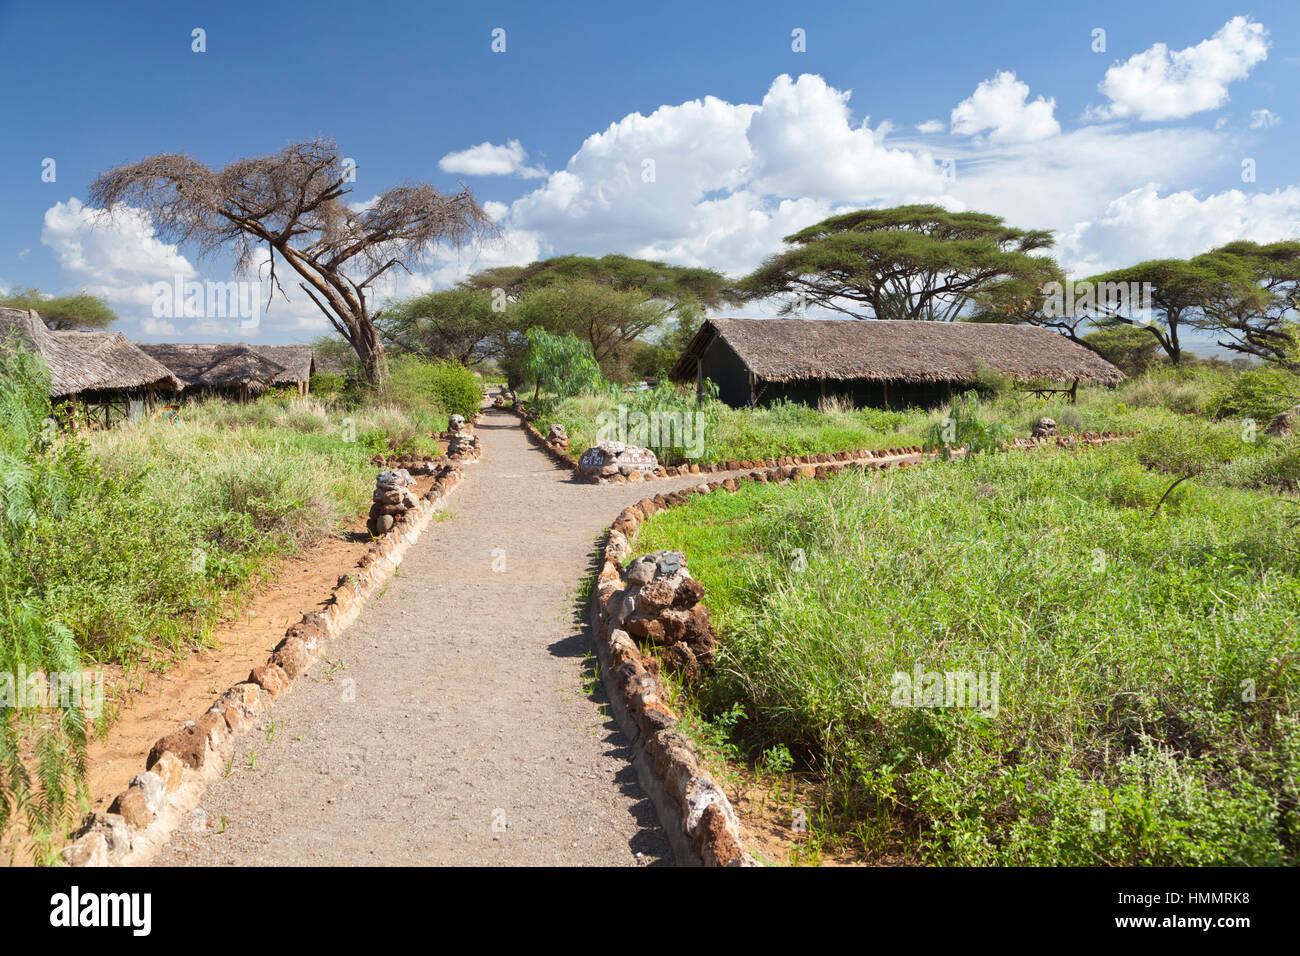 Tsavo, Kenya - February 4: Kibo Safari Camp in Amboseli National Park in Kenya on February 4, 2013 Stock Photo